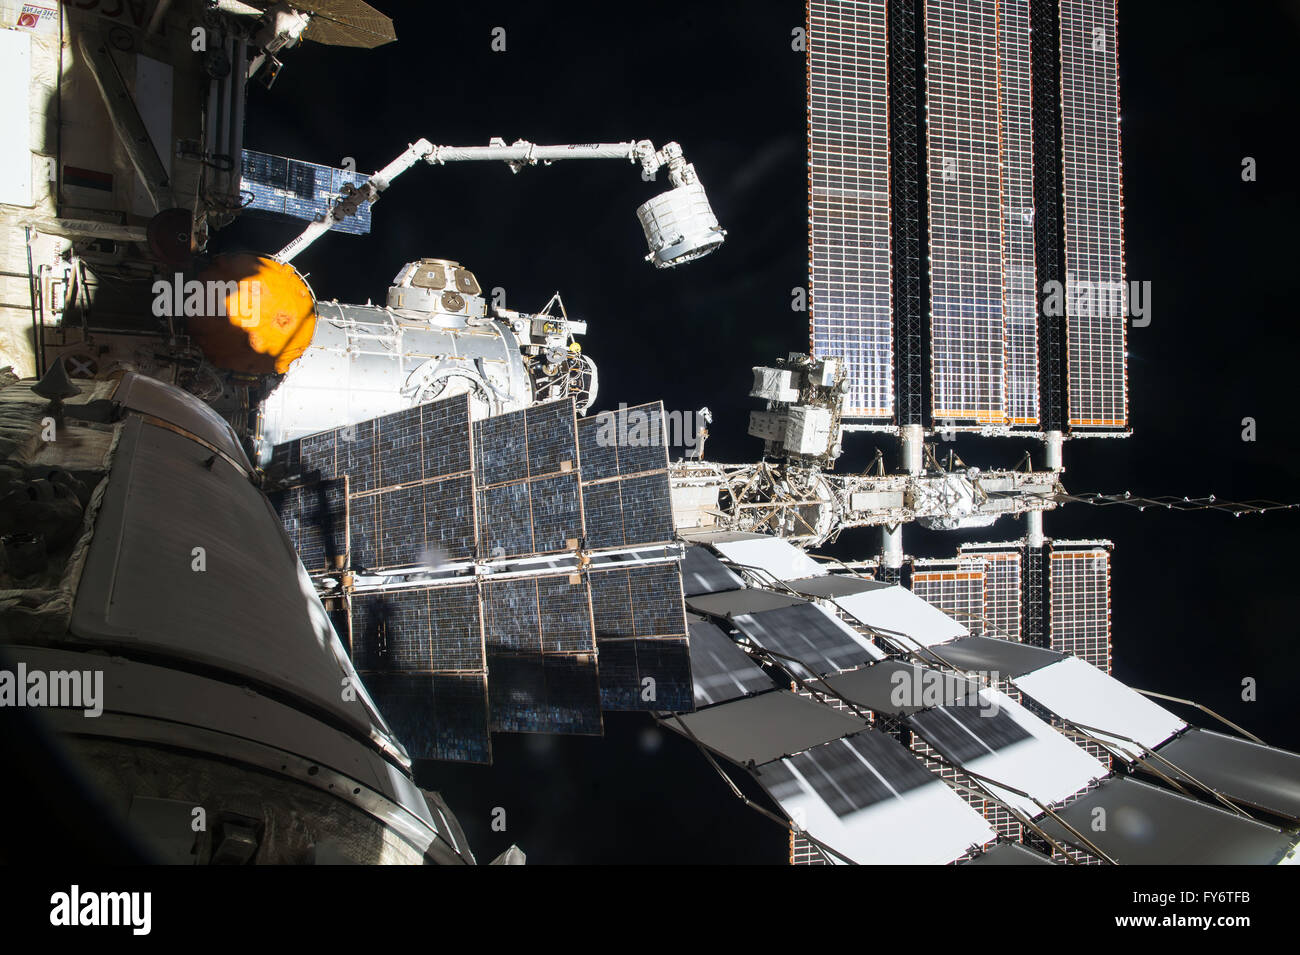 ISS-Astronauten verwenden Roboter Canadarm2 der Bigelow erweiterbare Modul in Position zu bewegen, wie es 16. April 2016 in der Erdumlaufbahn installiert ist. Das experimentelle erweiterbare Modul war das achtern Hafen der Ruhe-Modul befestigt. Stockfoto